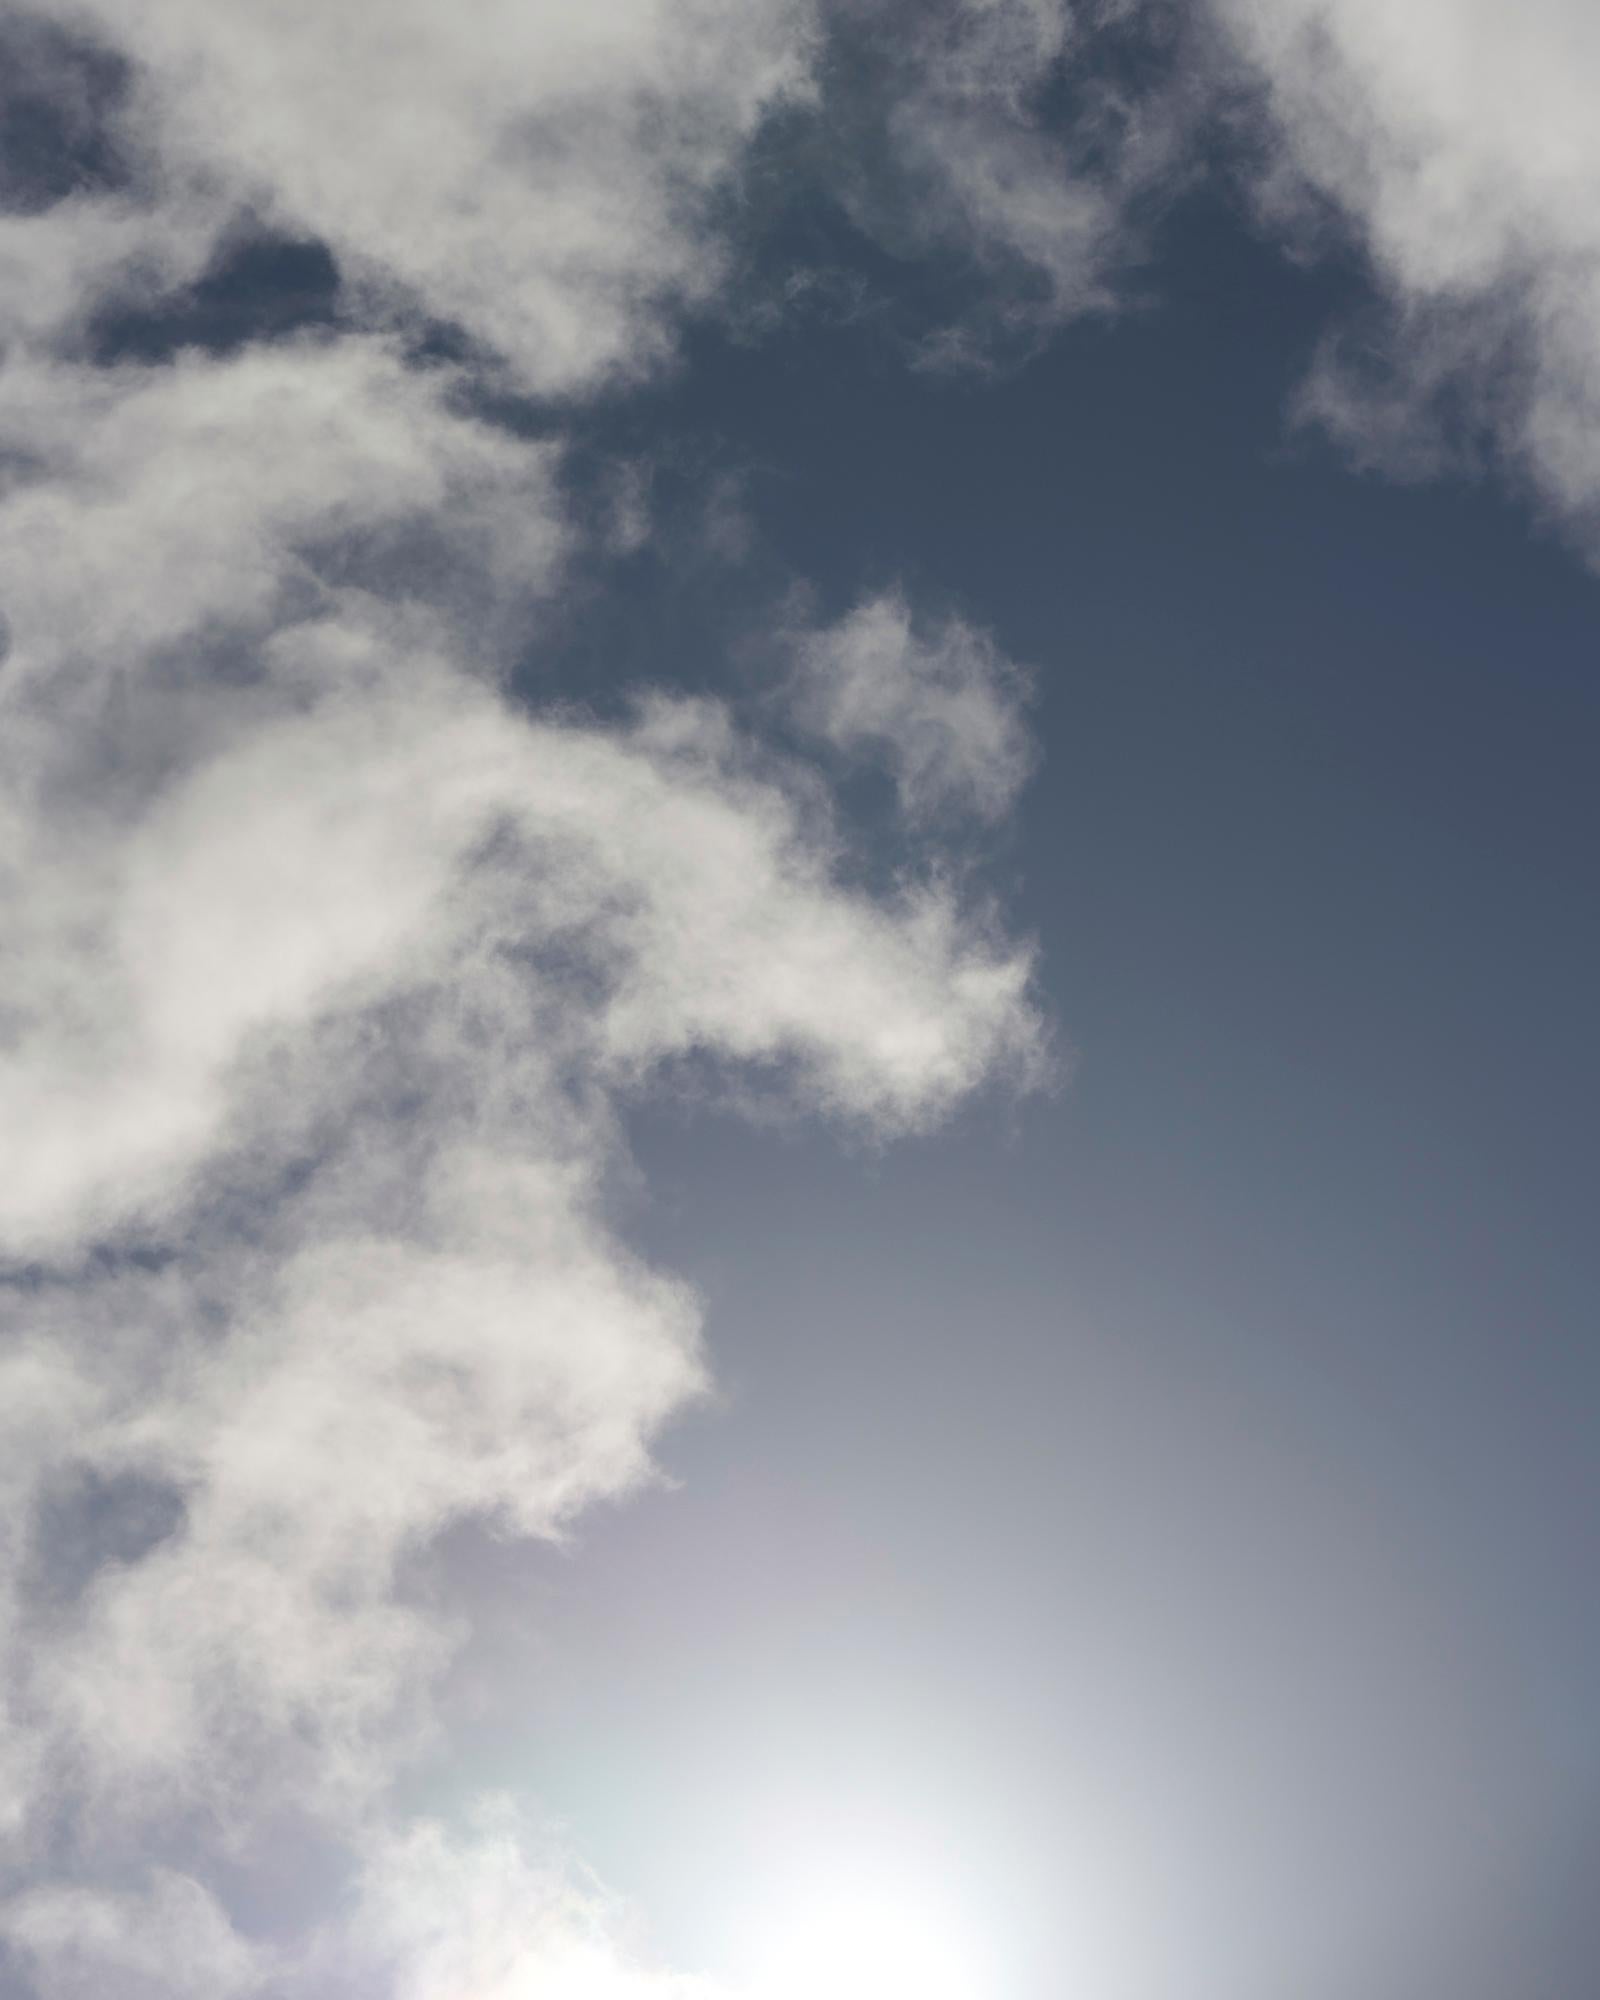 Cloud Study V – großformatige Fotografie einer dramatischen Wolkenlandschaft im Sommerhimmel – Photograph von Frank Schott